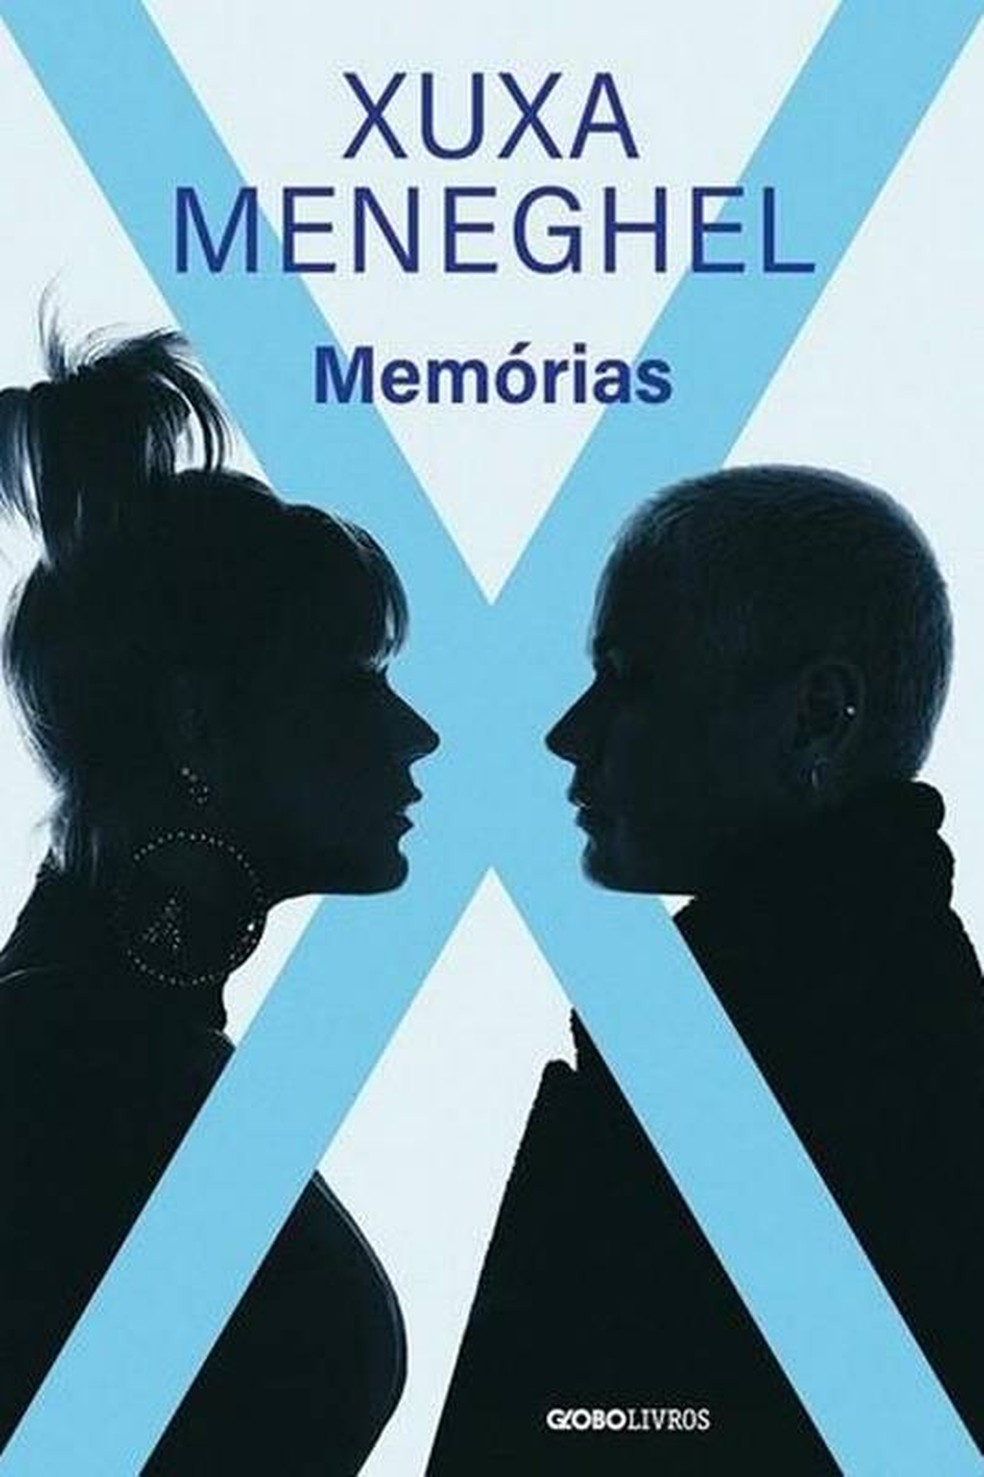 Xuxa Meneghel ("Memórias") — Foto: Divulgação